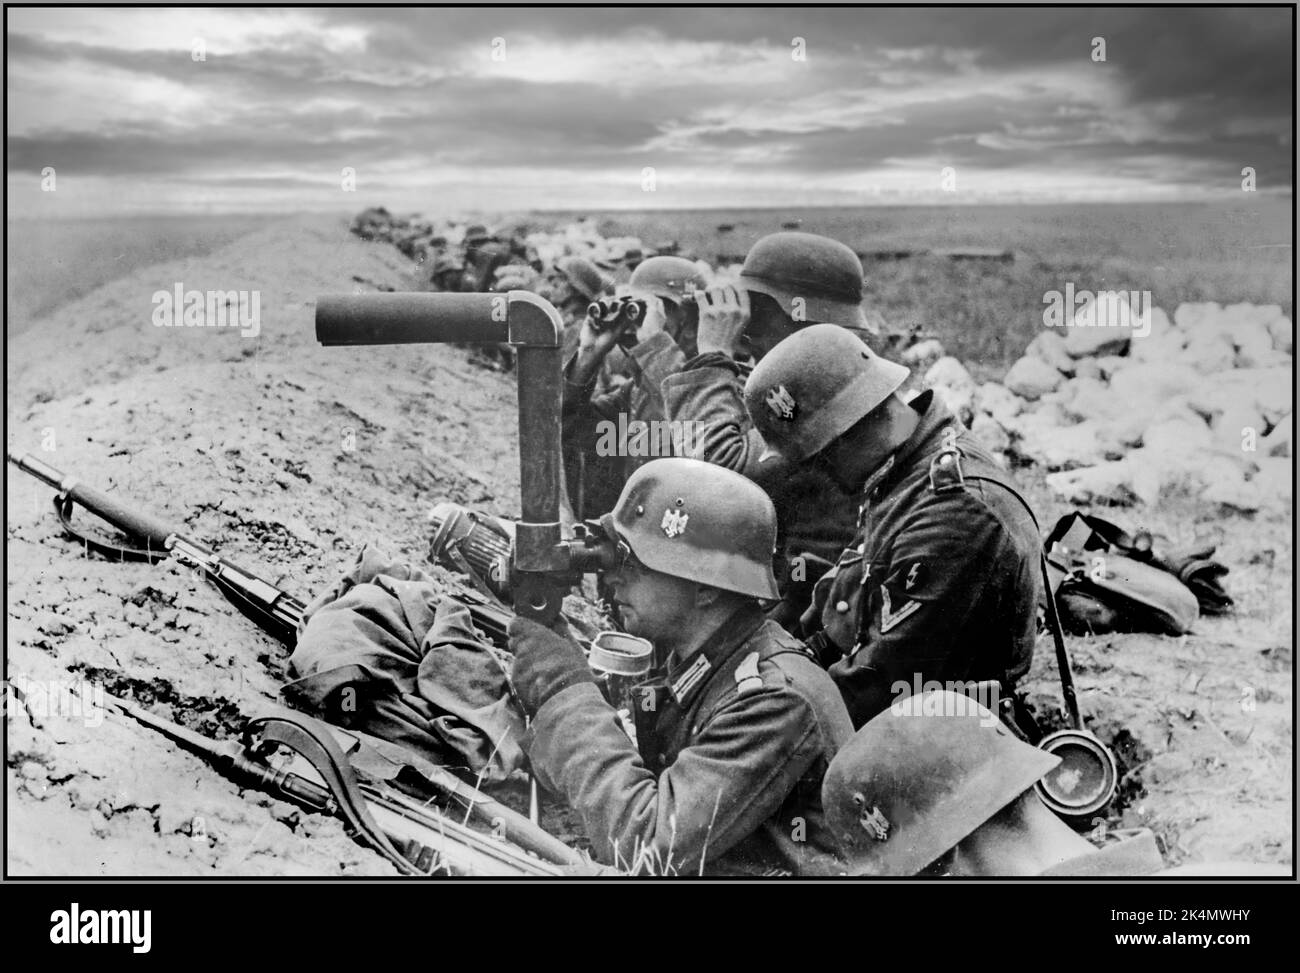 OPERAZIONE BARBAROSSA WW2 fanteria tedesca nelle trincee del fronte orientale, uno dei soldati osserva le posizioni sovietiche attraverso SF14ZGi binocoli. Uno dei più unici sistemi ottici del campo di battaglia della seconda guerra mondiale sviluppati da Leitz, produttore della fotocamera Leica. Questo ibrido tra binocolo e periscopio ha permesso all'osservatore di rimanere nascosto in modo sicuro con solo la lente obiettivo visibile al nemico. La Wehrmacht lo utilizzò per l'osservazione generale (nei veicoli e a terra) e per l'osservazione e la direzione degli incendi di artiglieria. Data ottobre 1941 Foto Stock